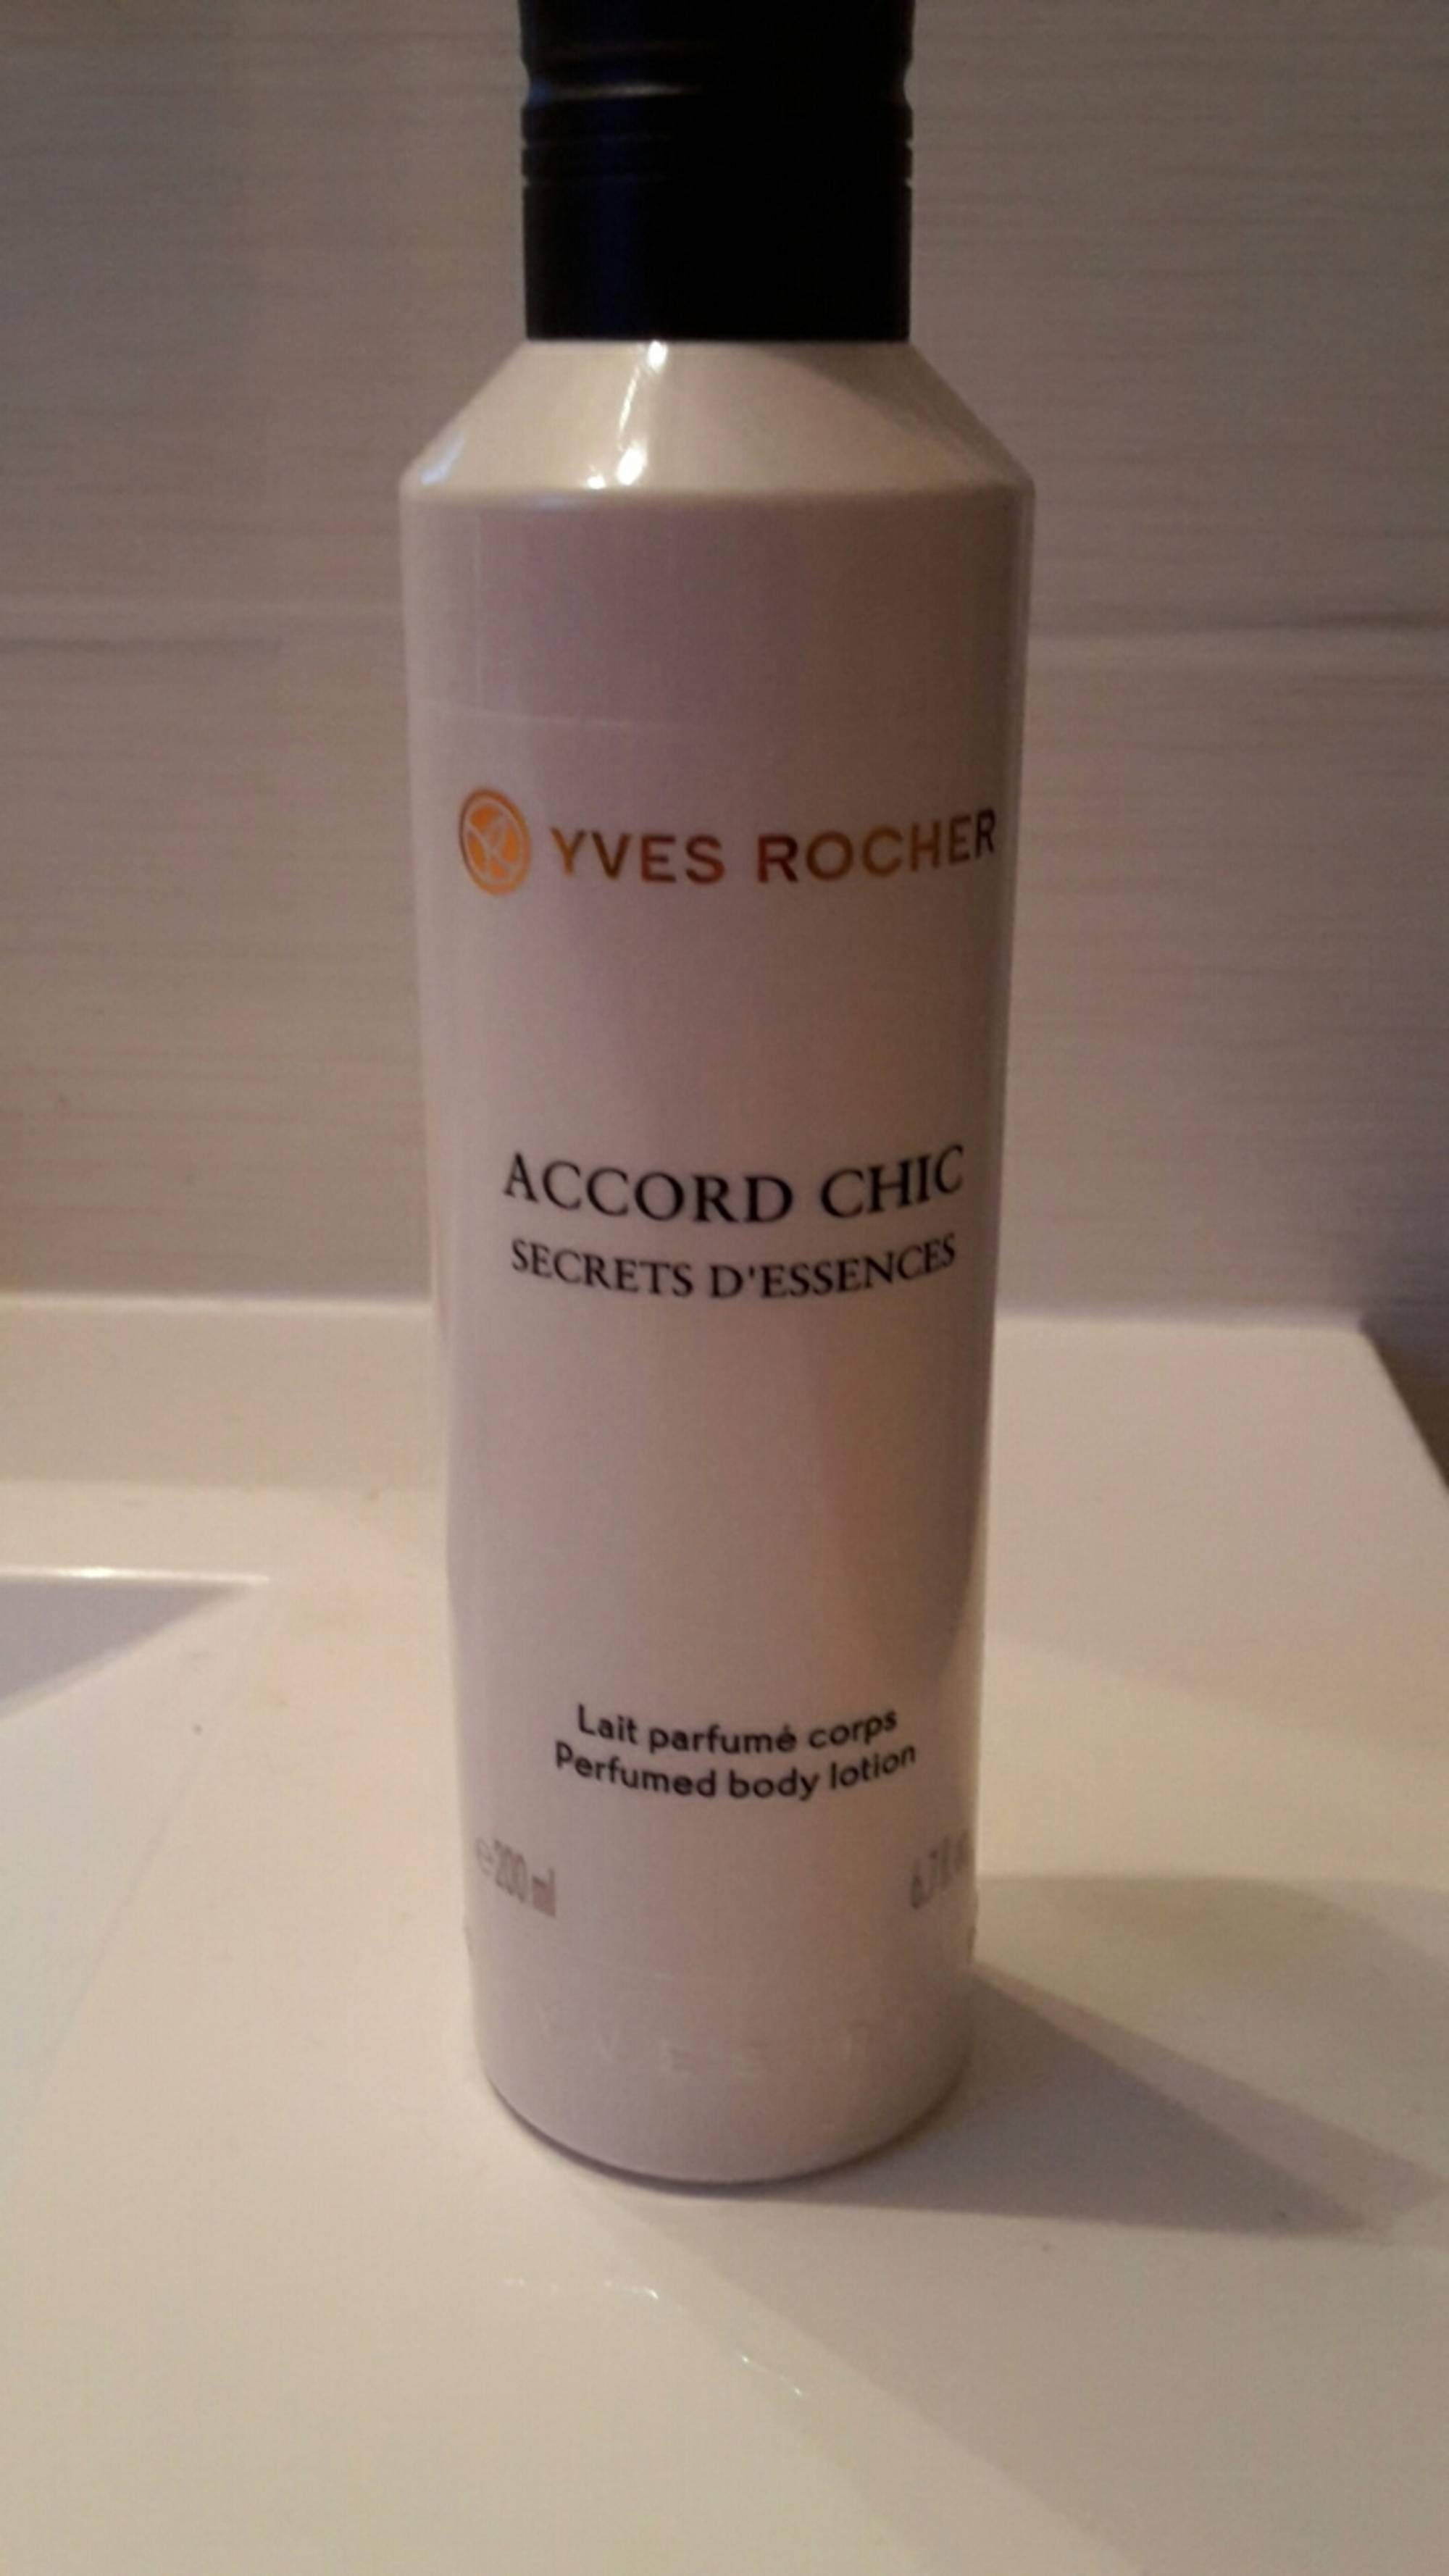 YVES ROCHER - Accord Chic Secrets d'Essences - Lait parfumé corps